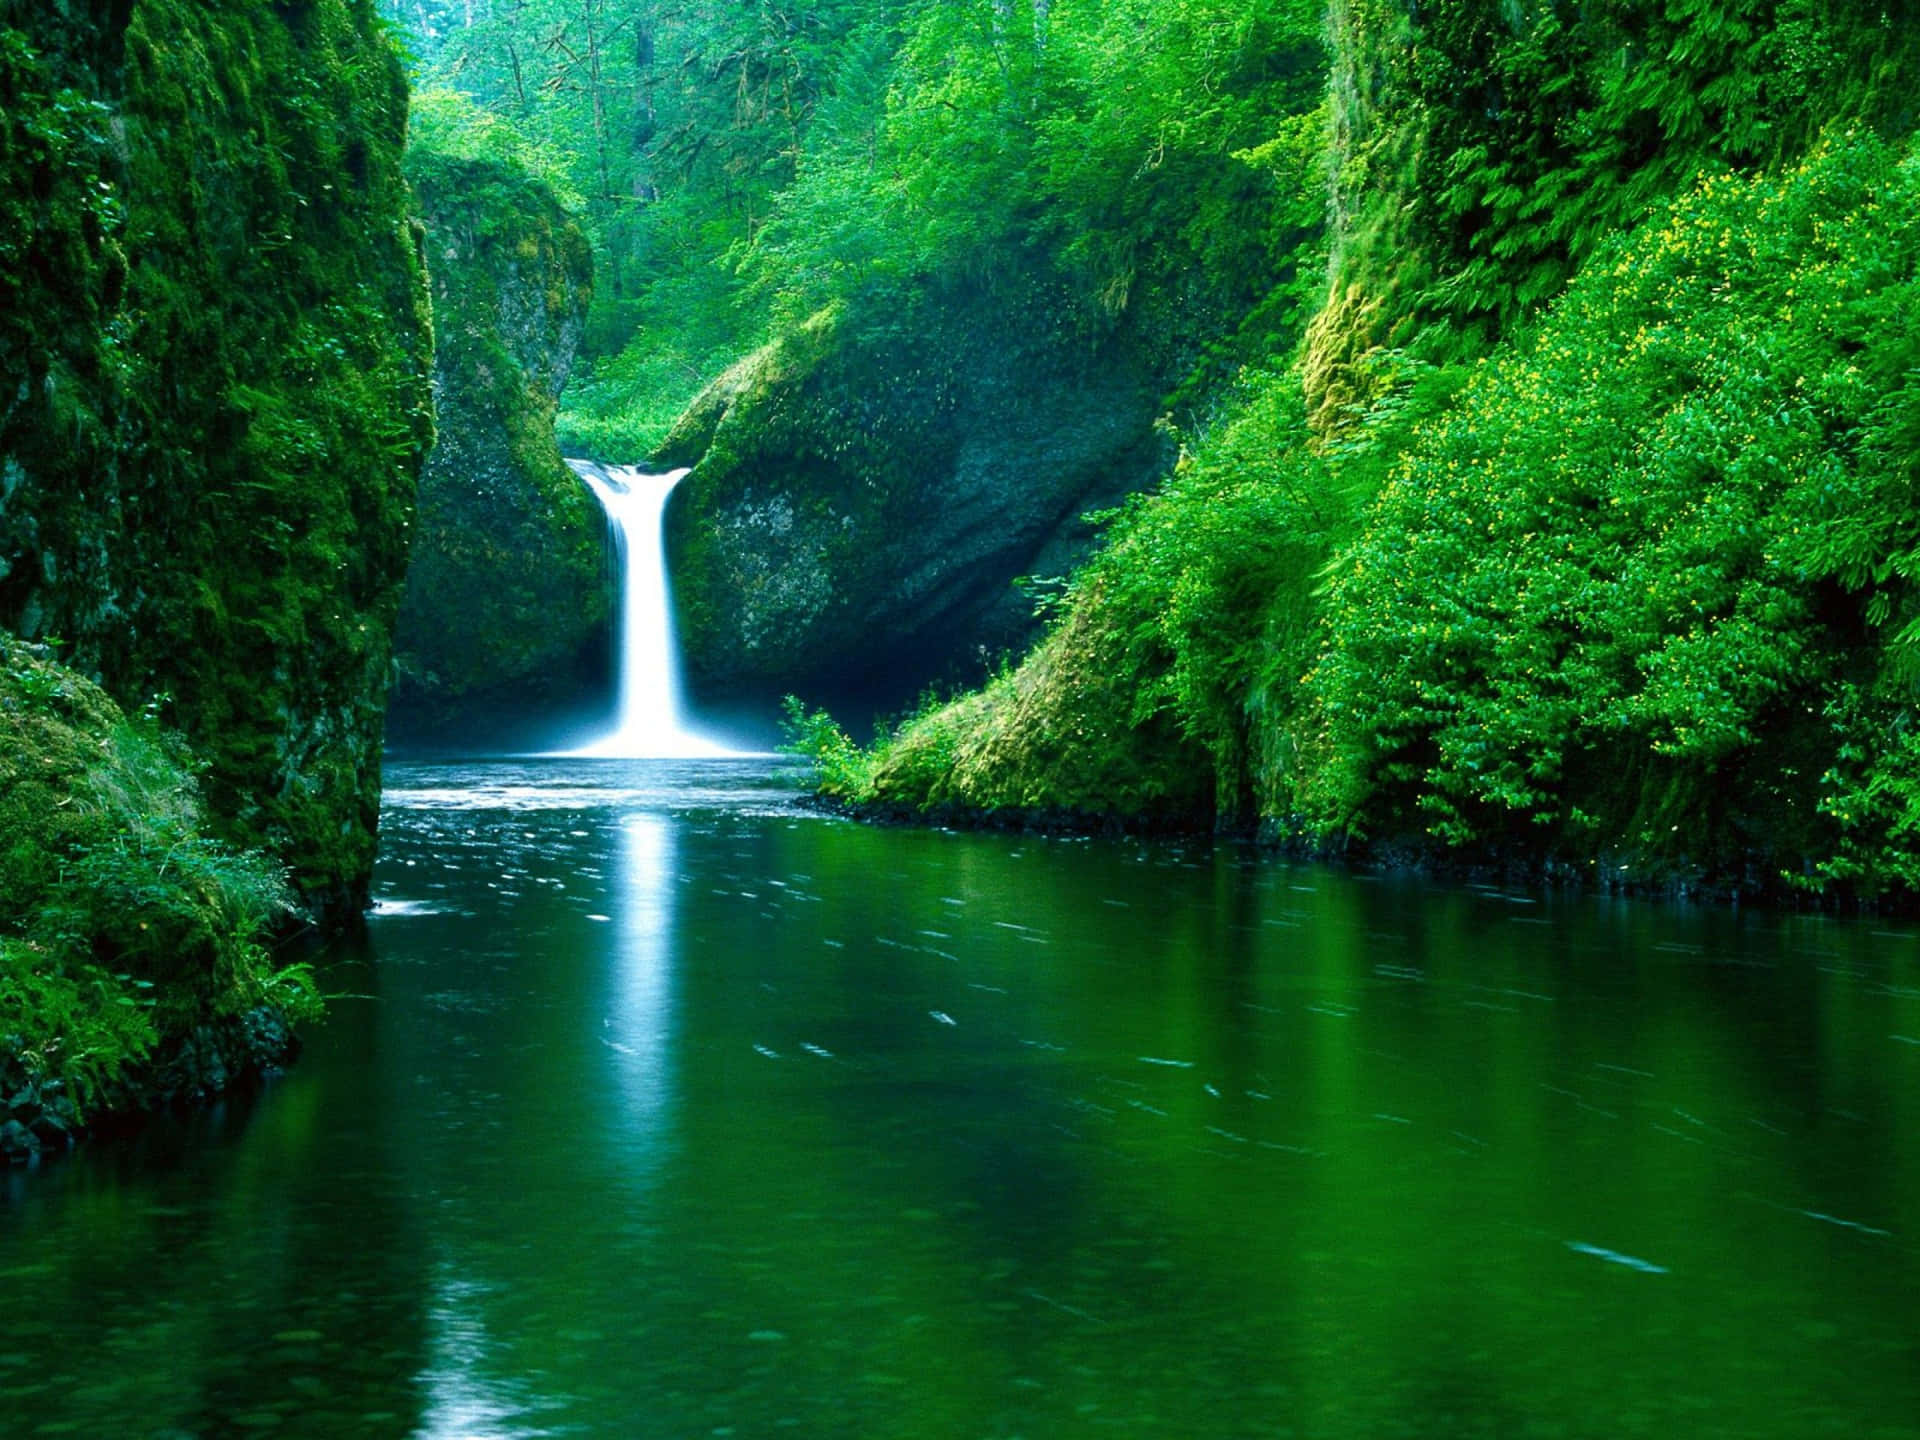 Einwasserfall In Einem Grünen Wald Mit Einem Wasserfall.